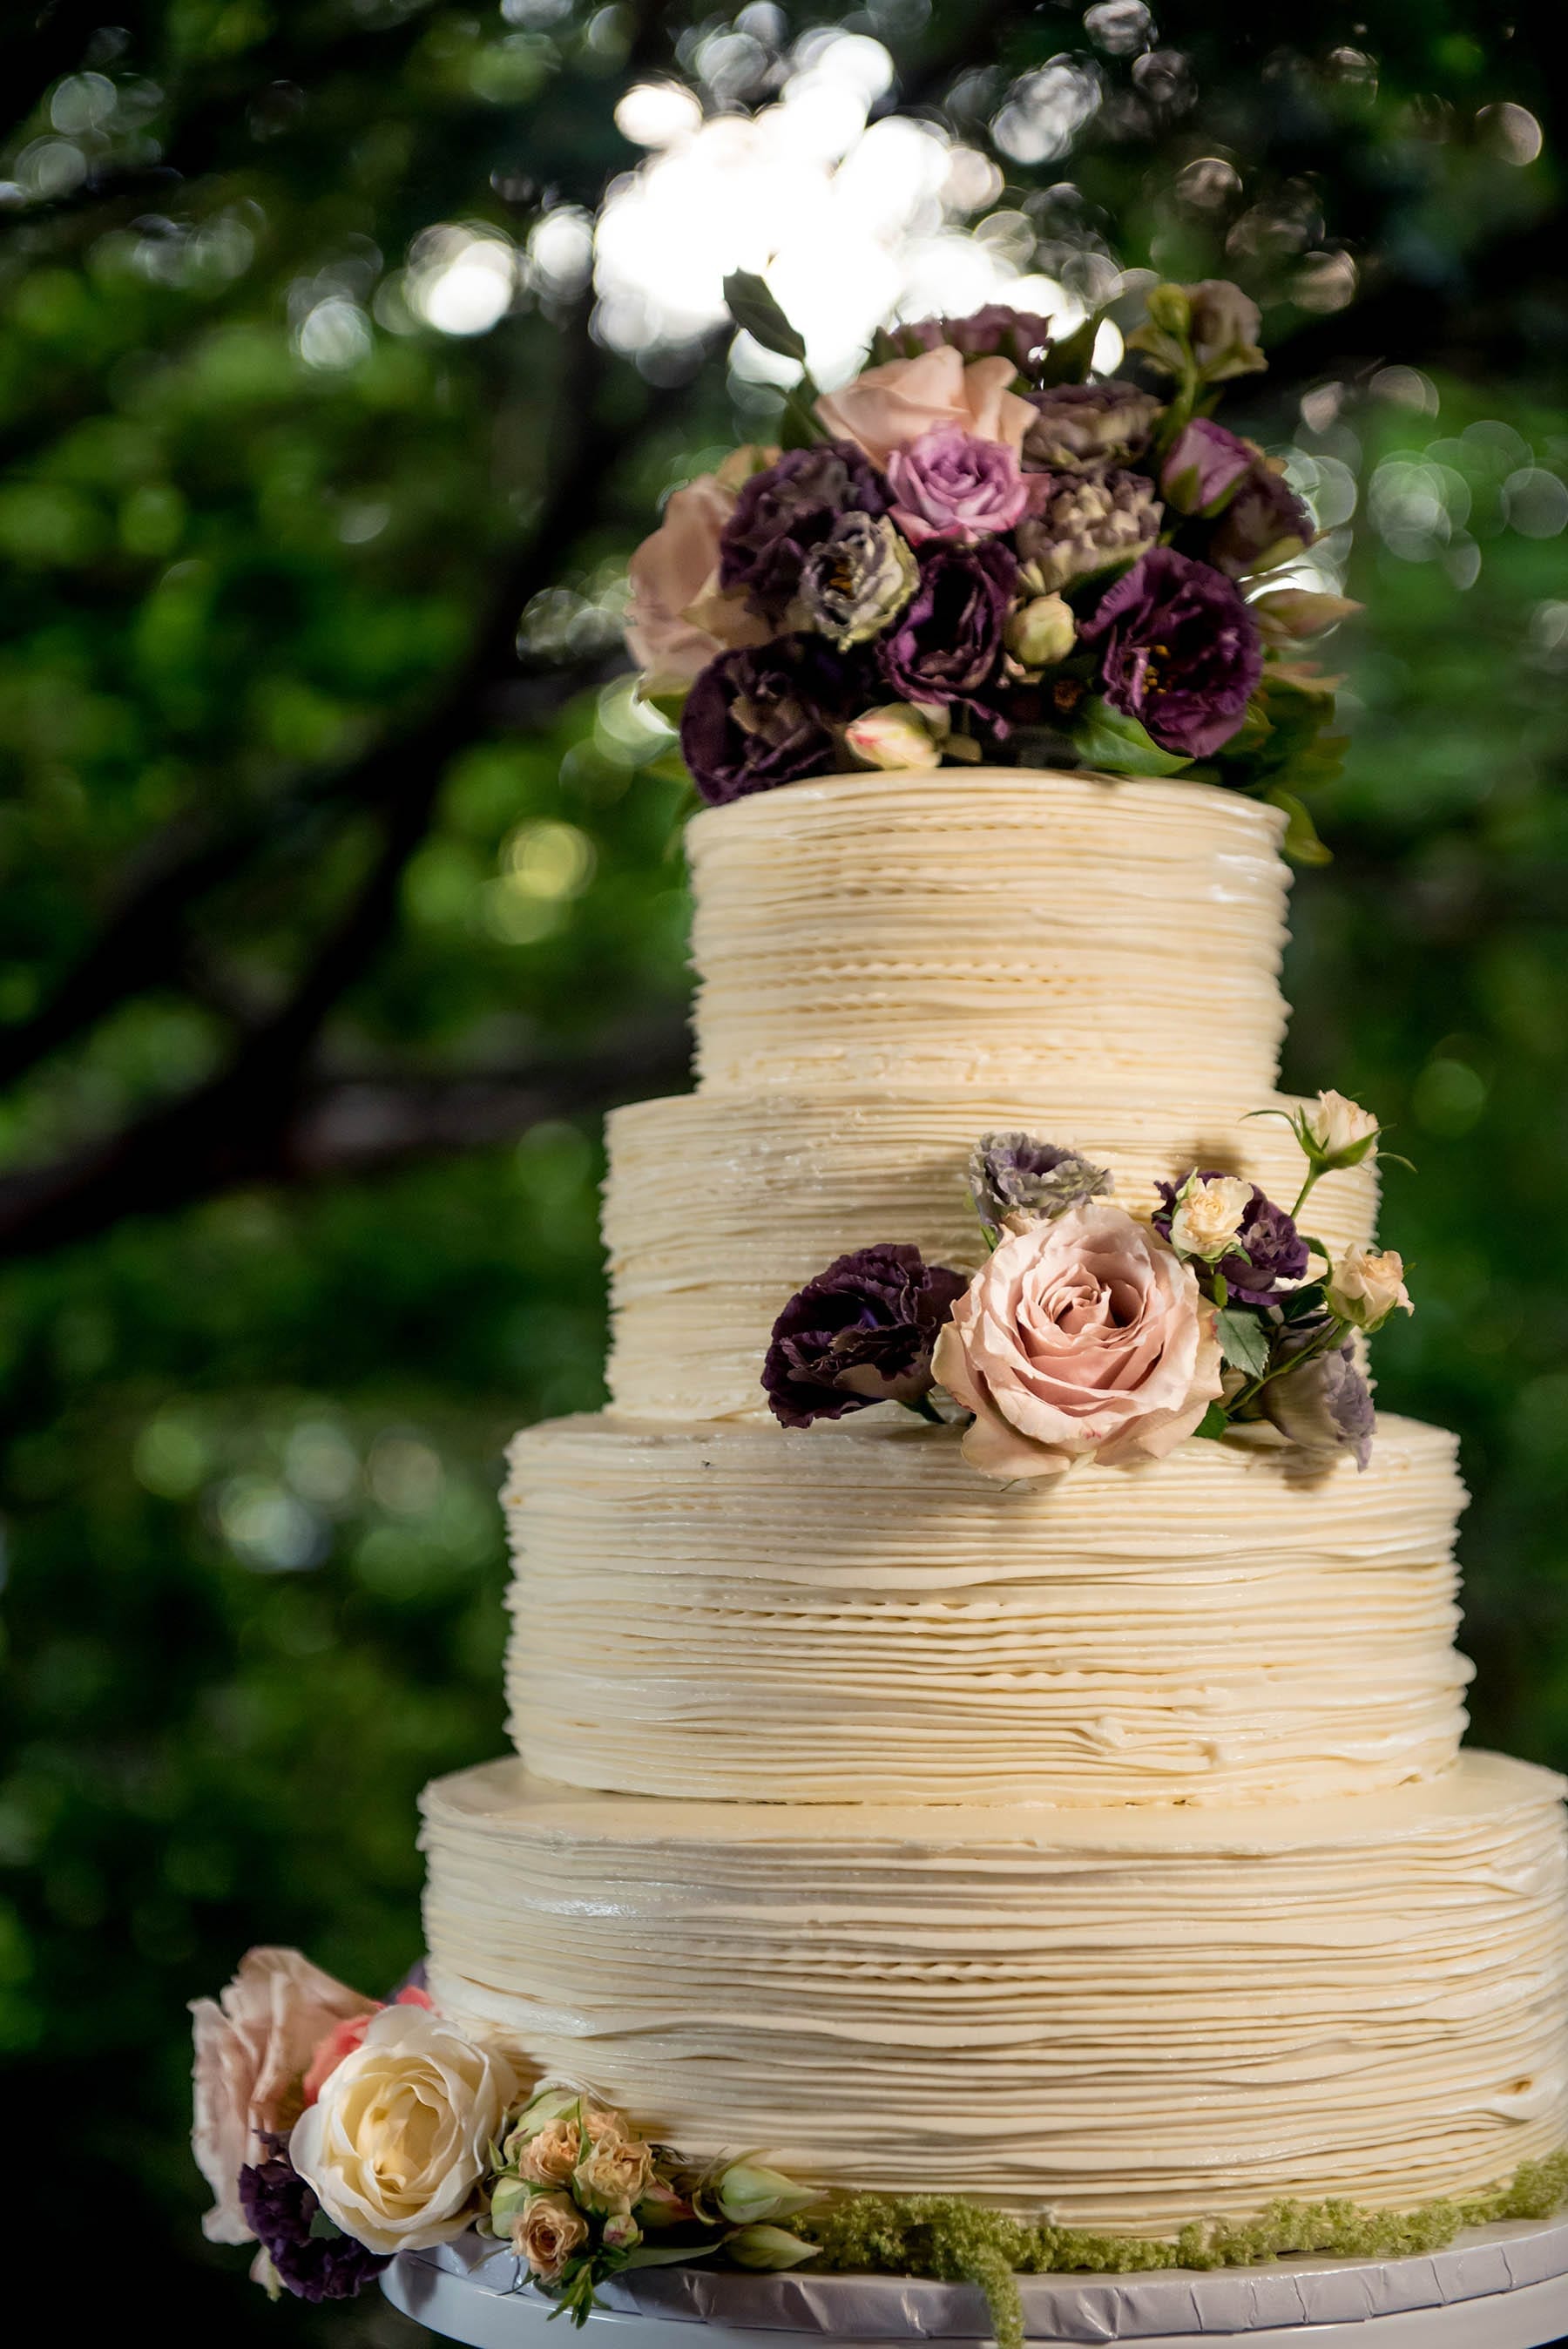 cake with flowers New Leaf Restaurant Summer Garden Wedding Details